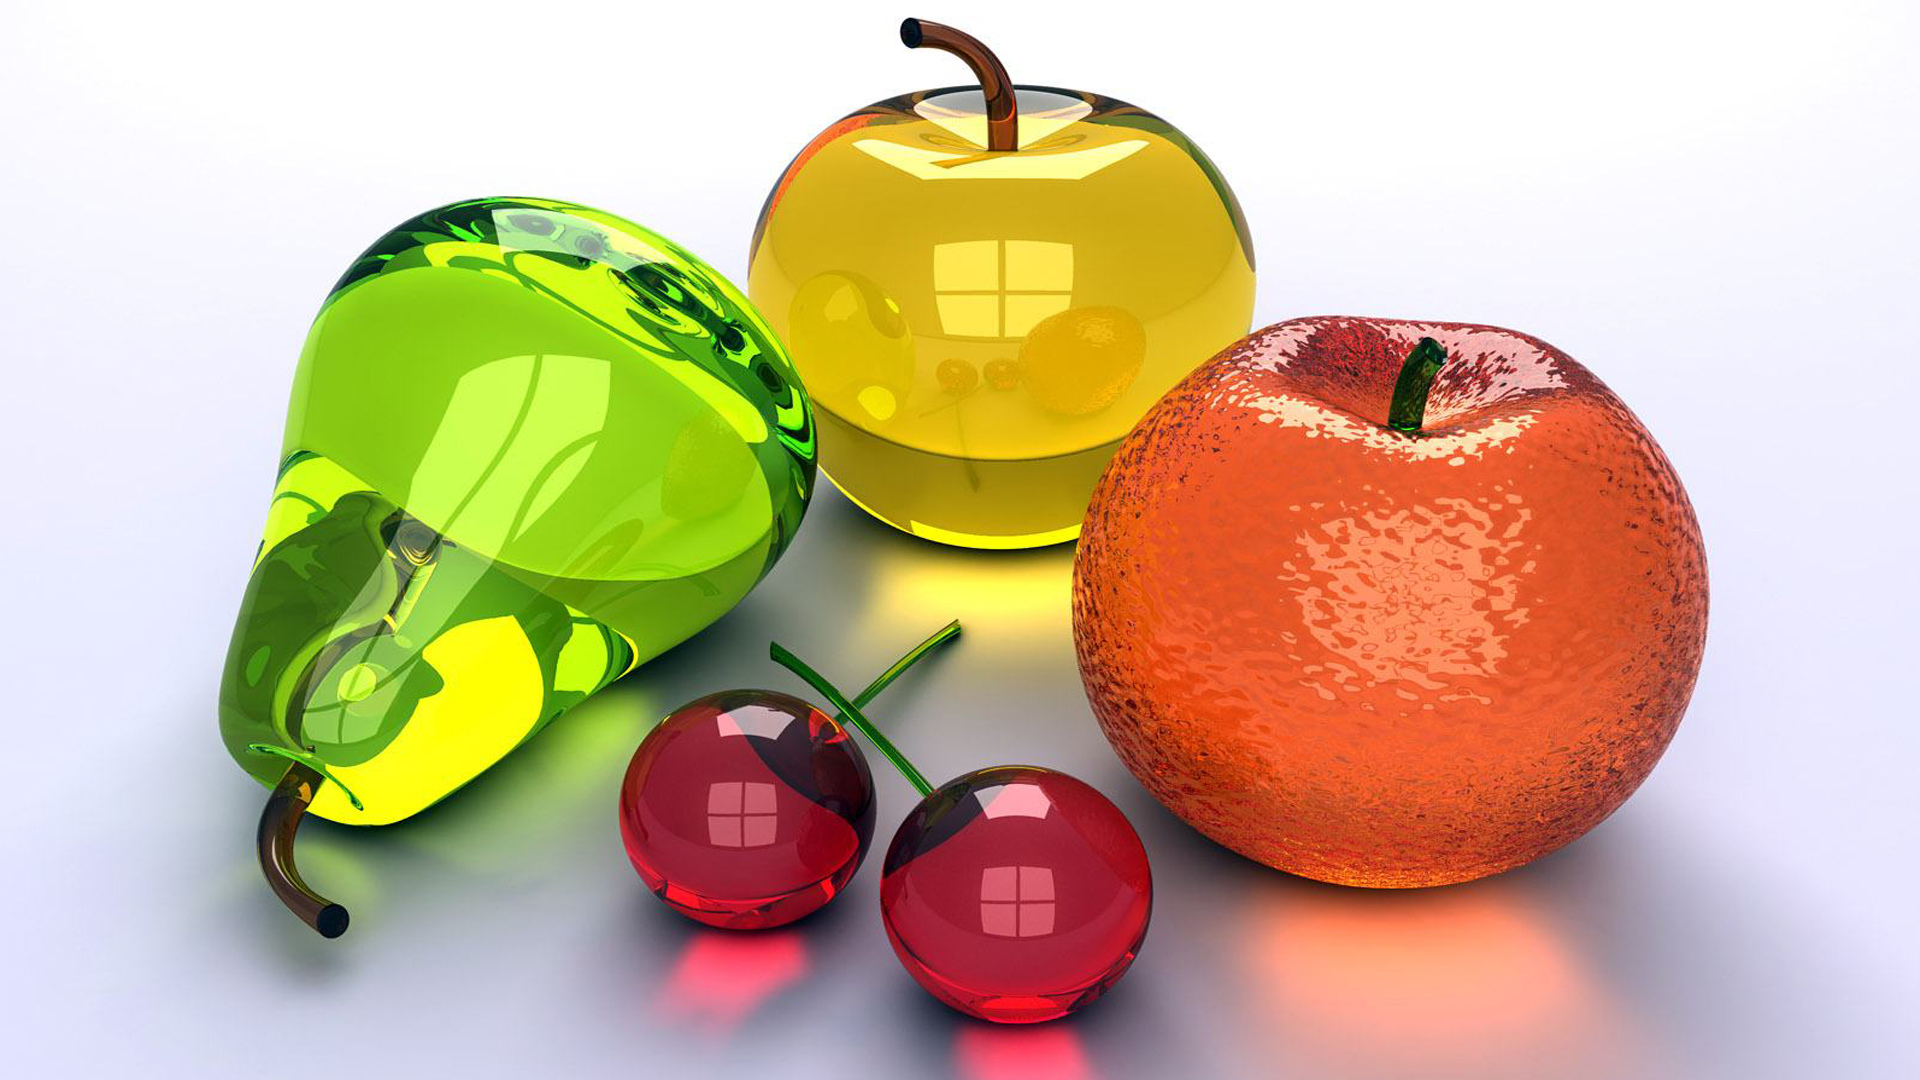 груша, яблоко, апельсин, вишни, прозрачность, блеск, стекло